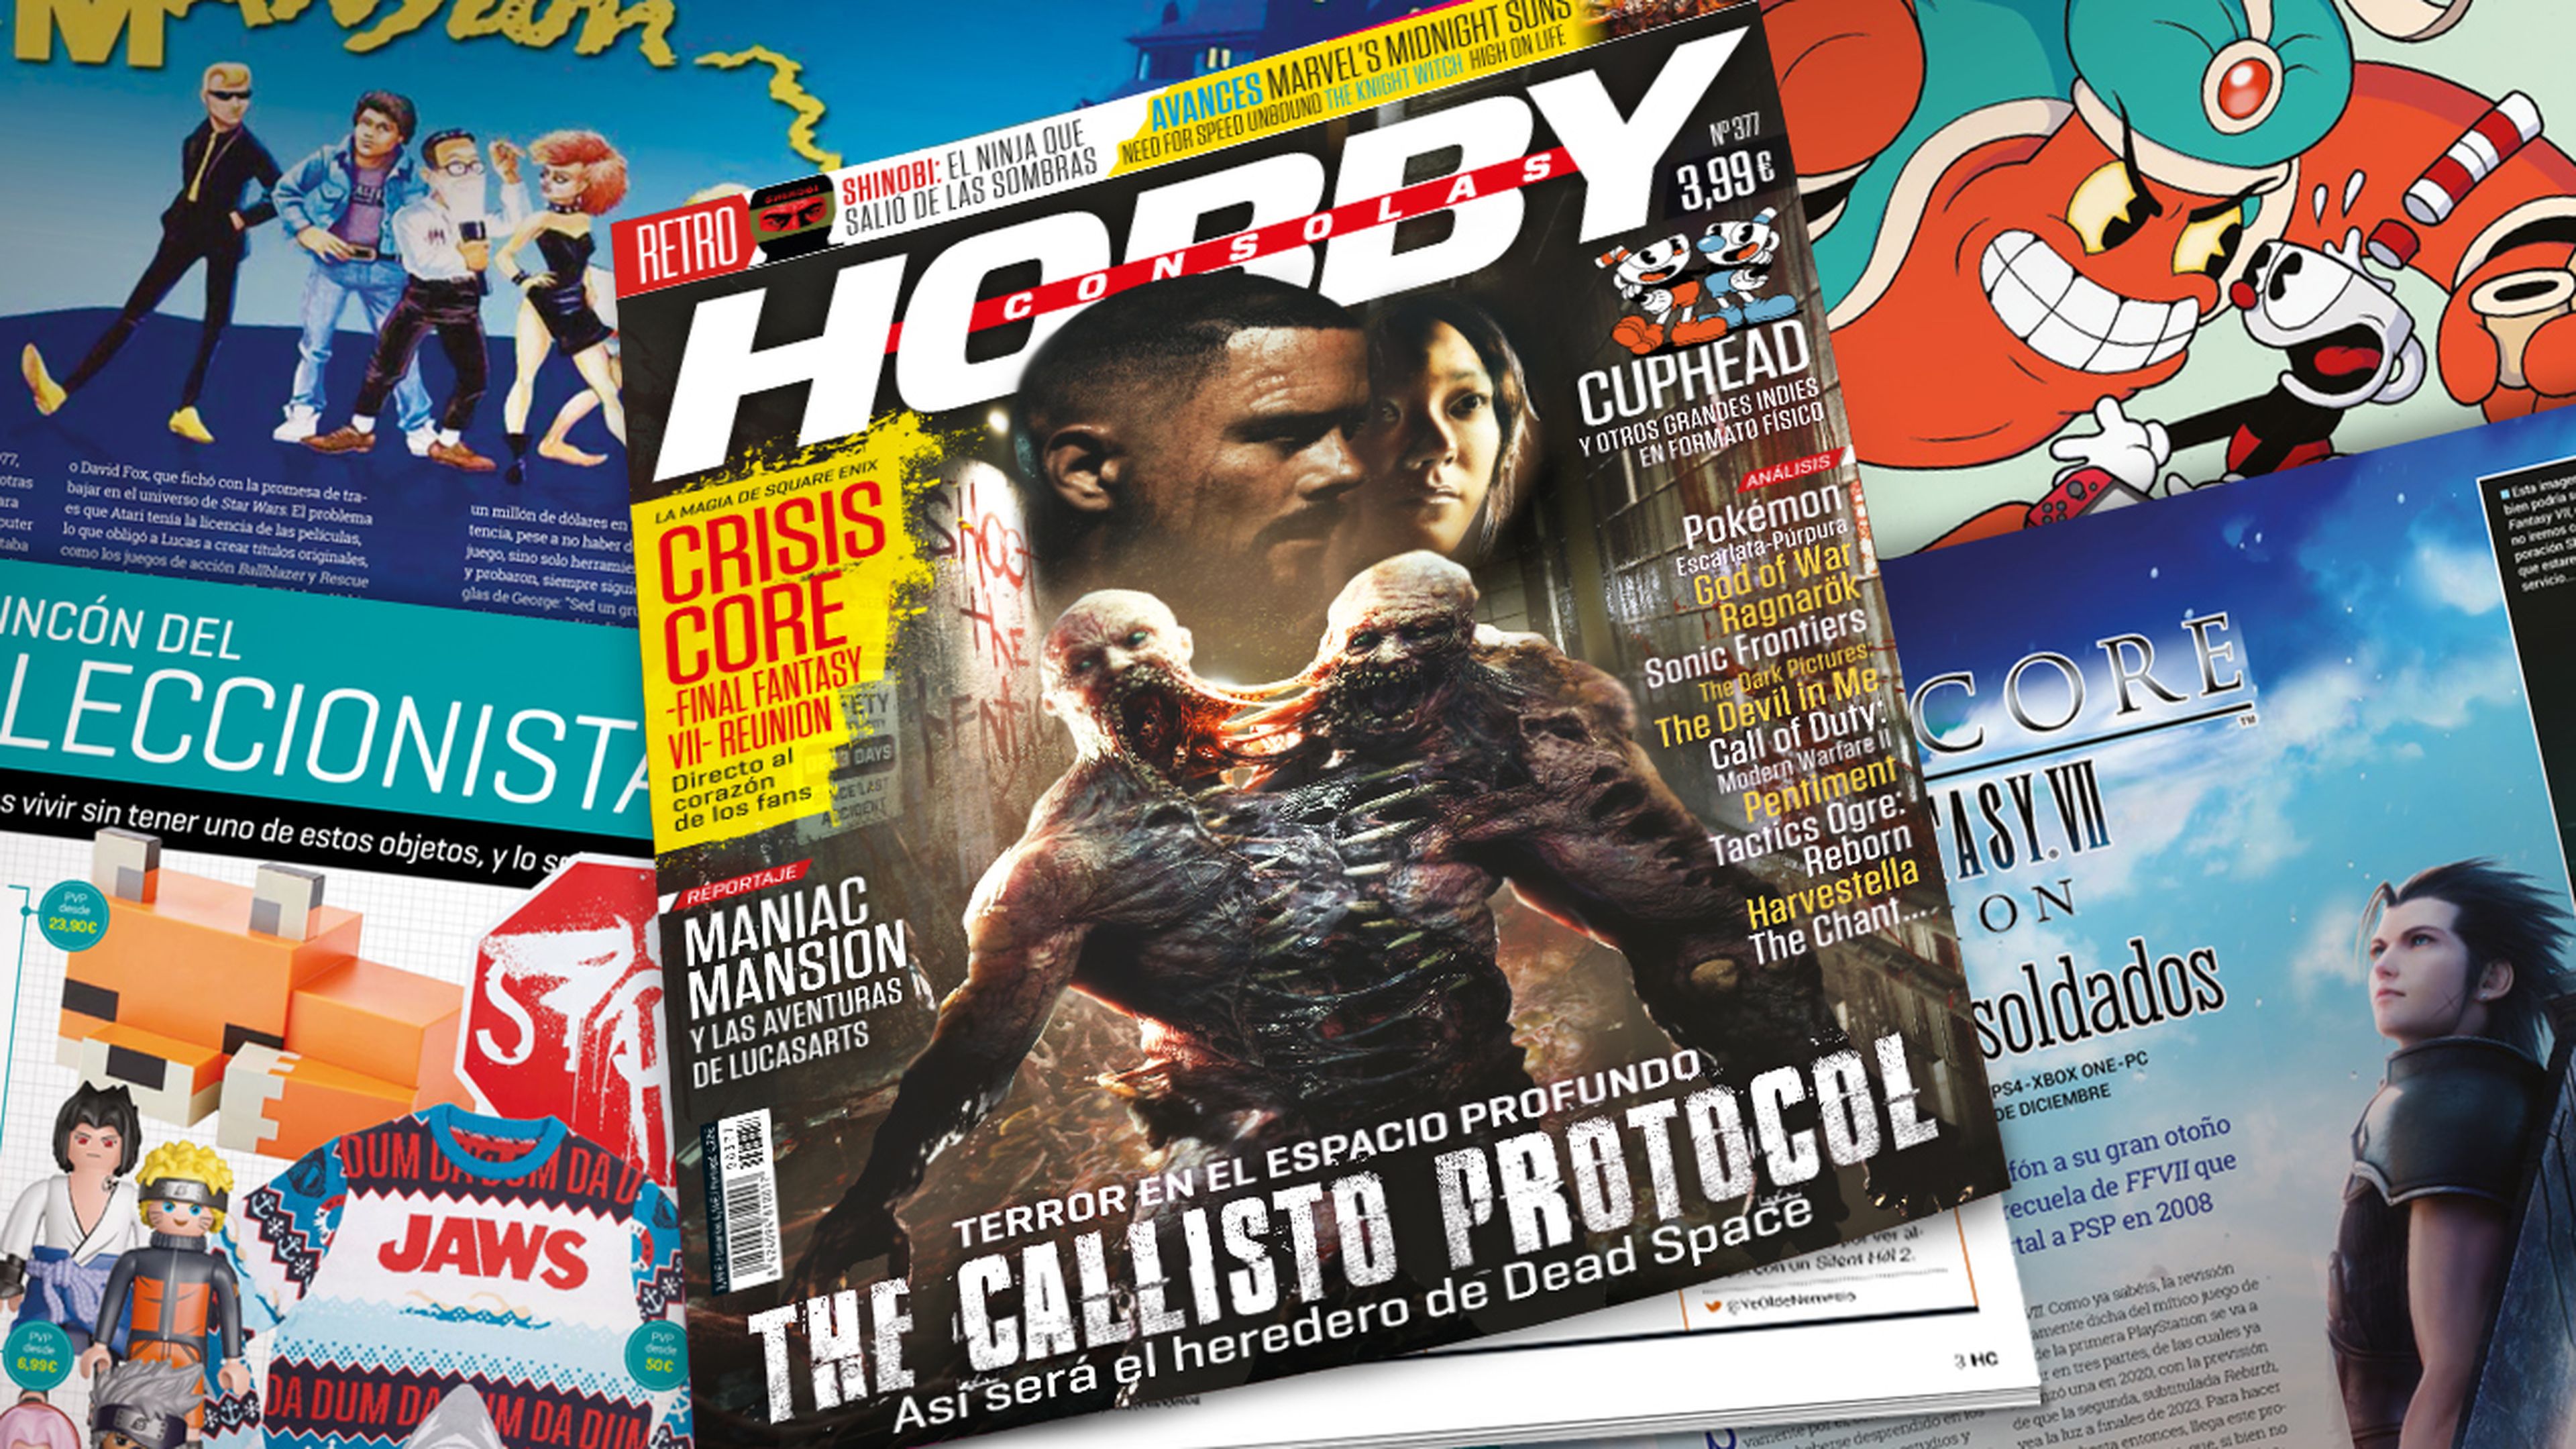 Hobby Consolas 377, ya a la venta con The Callisto Protocol en portada